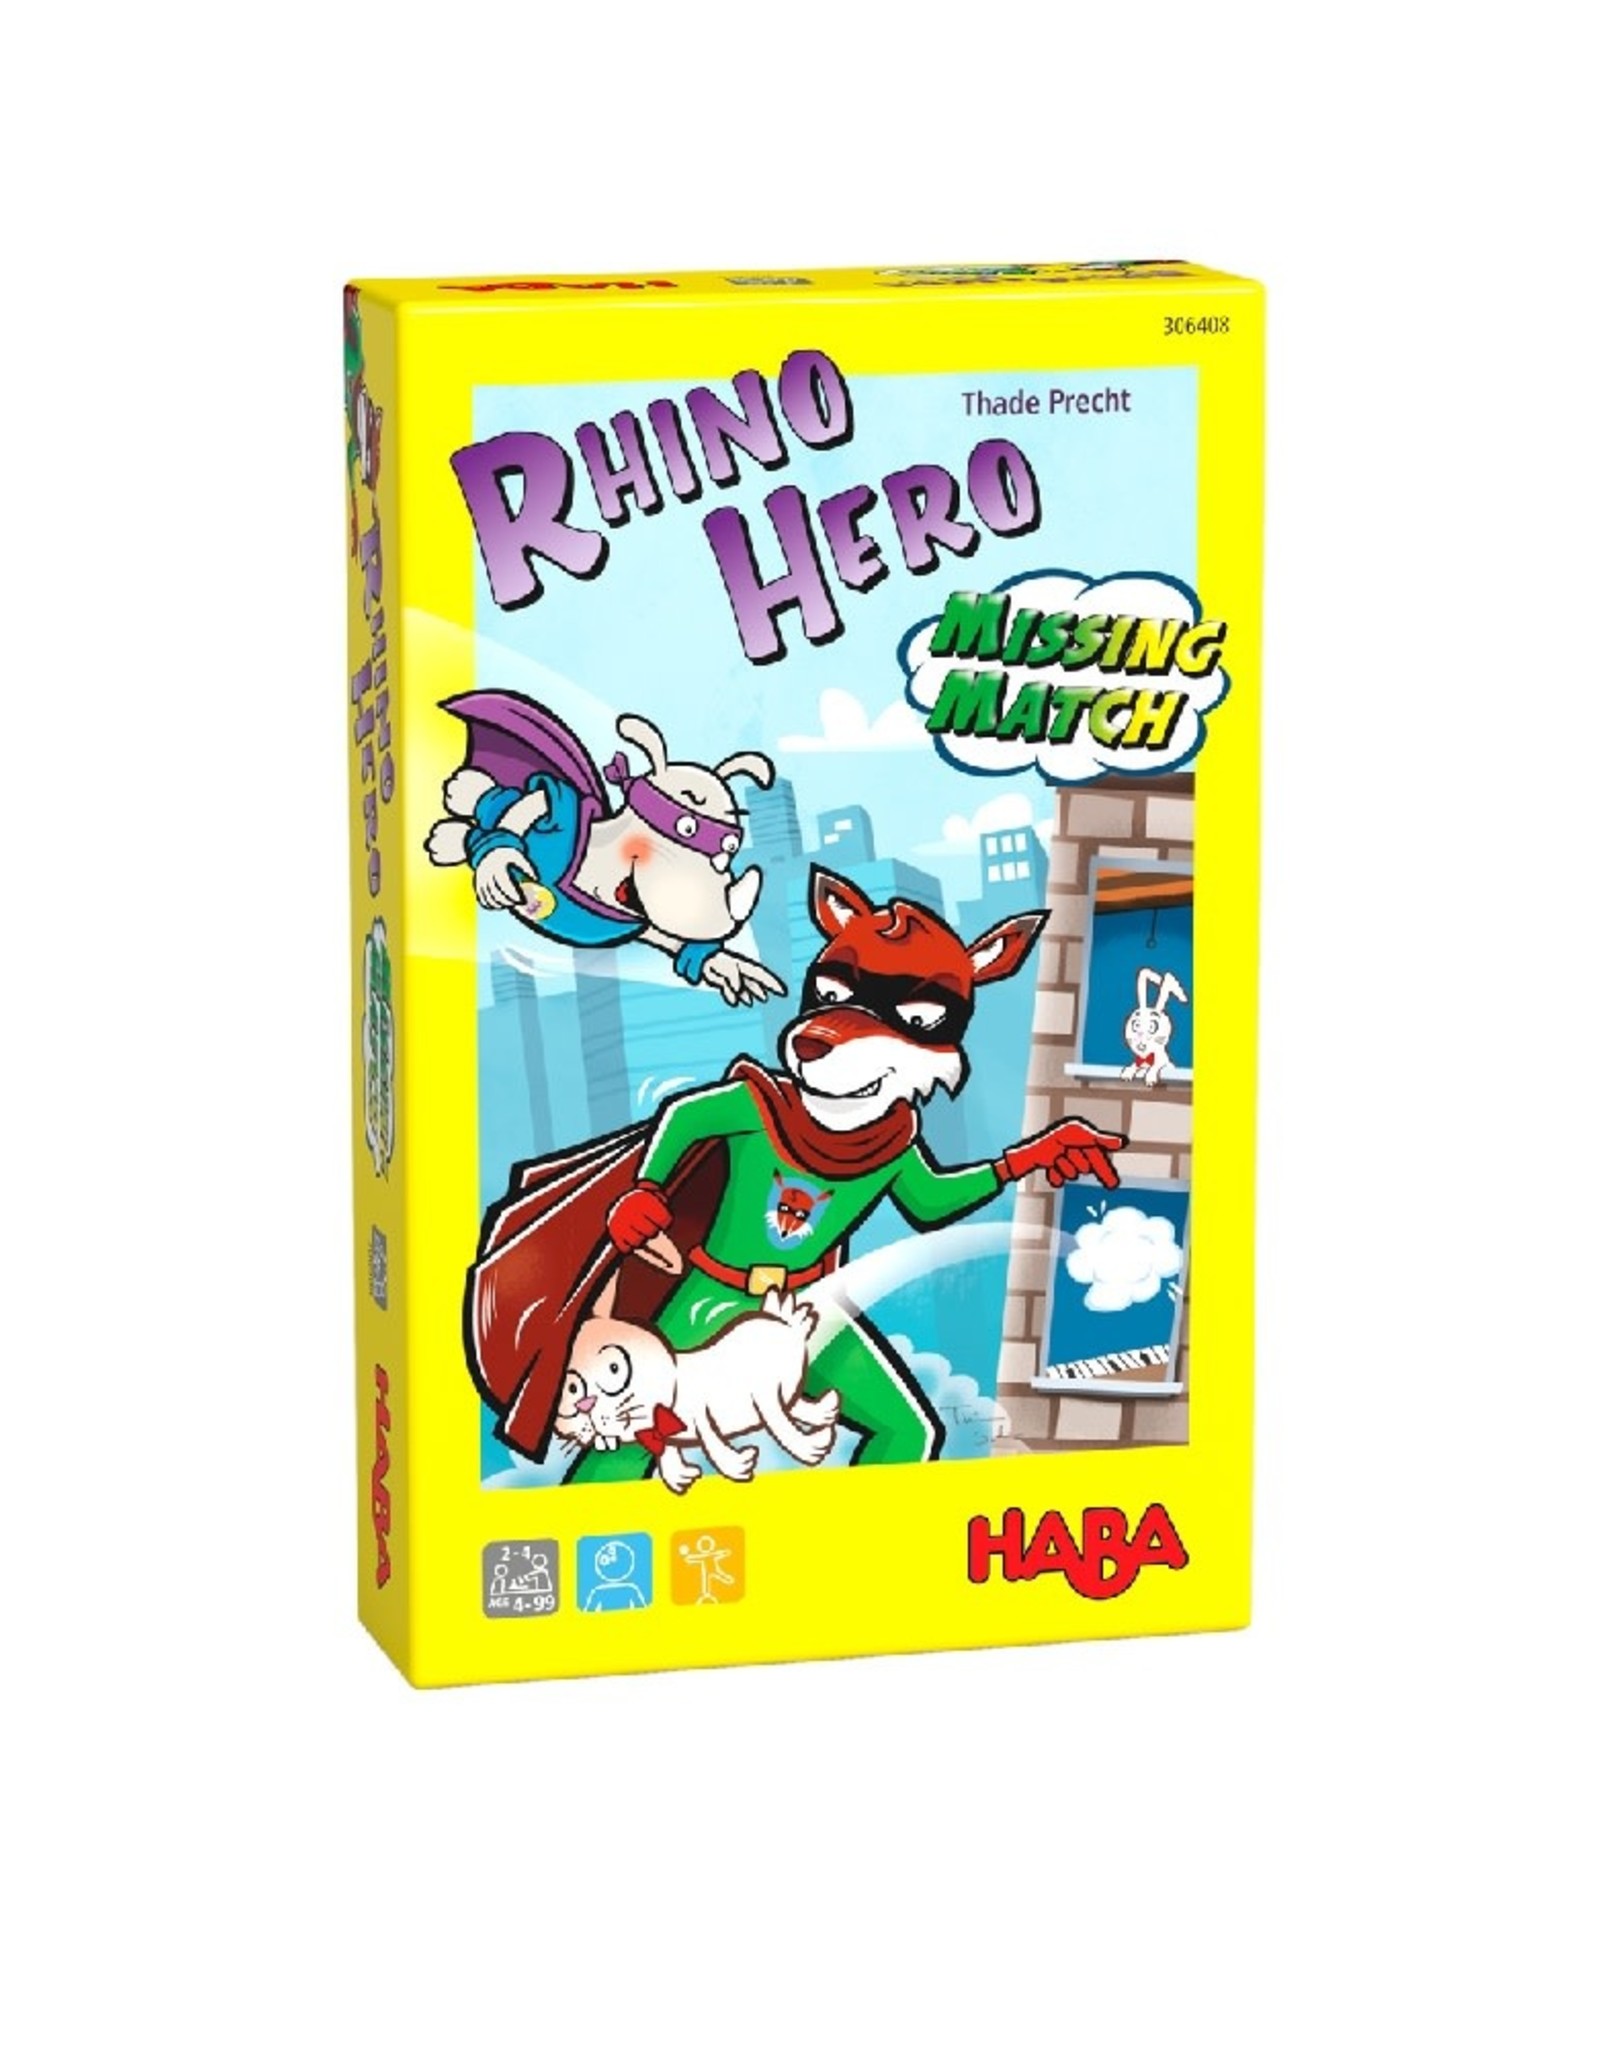 HABA Rhino Hero Missing Match